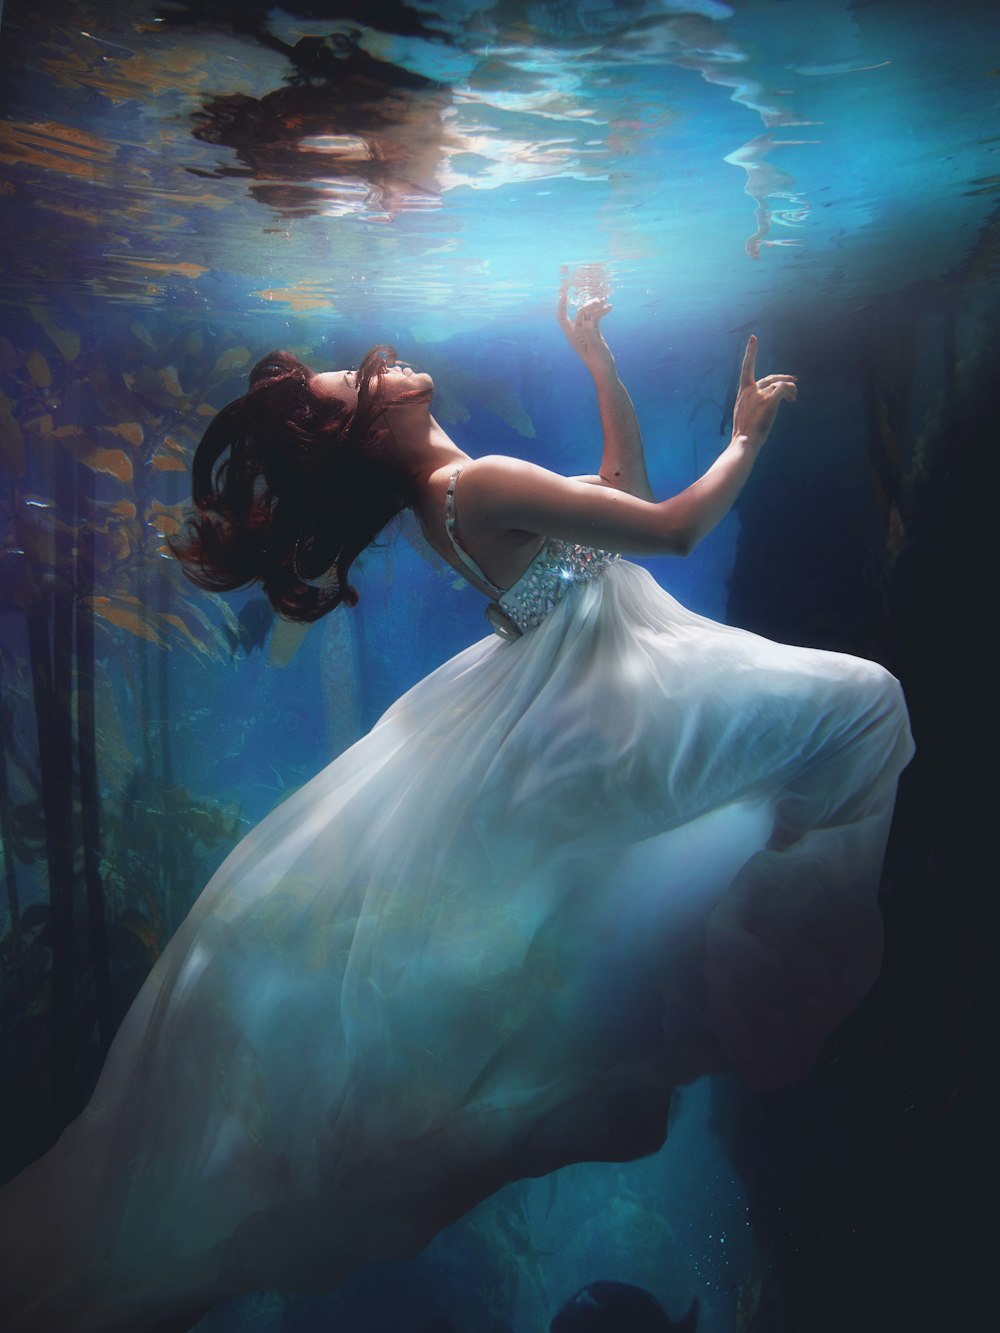 photographie sous-marine d’une femme portant une robe blanche